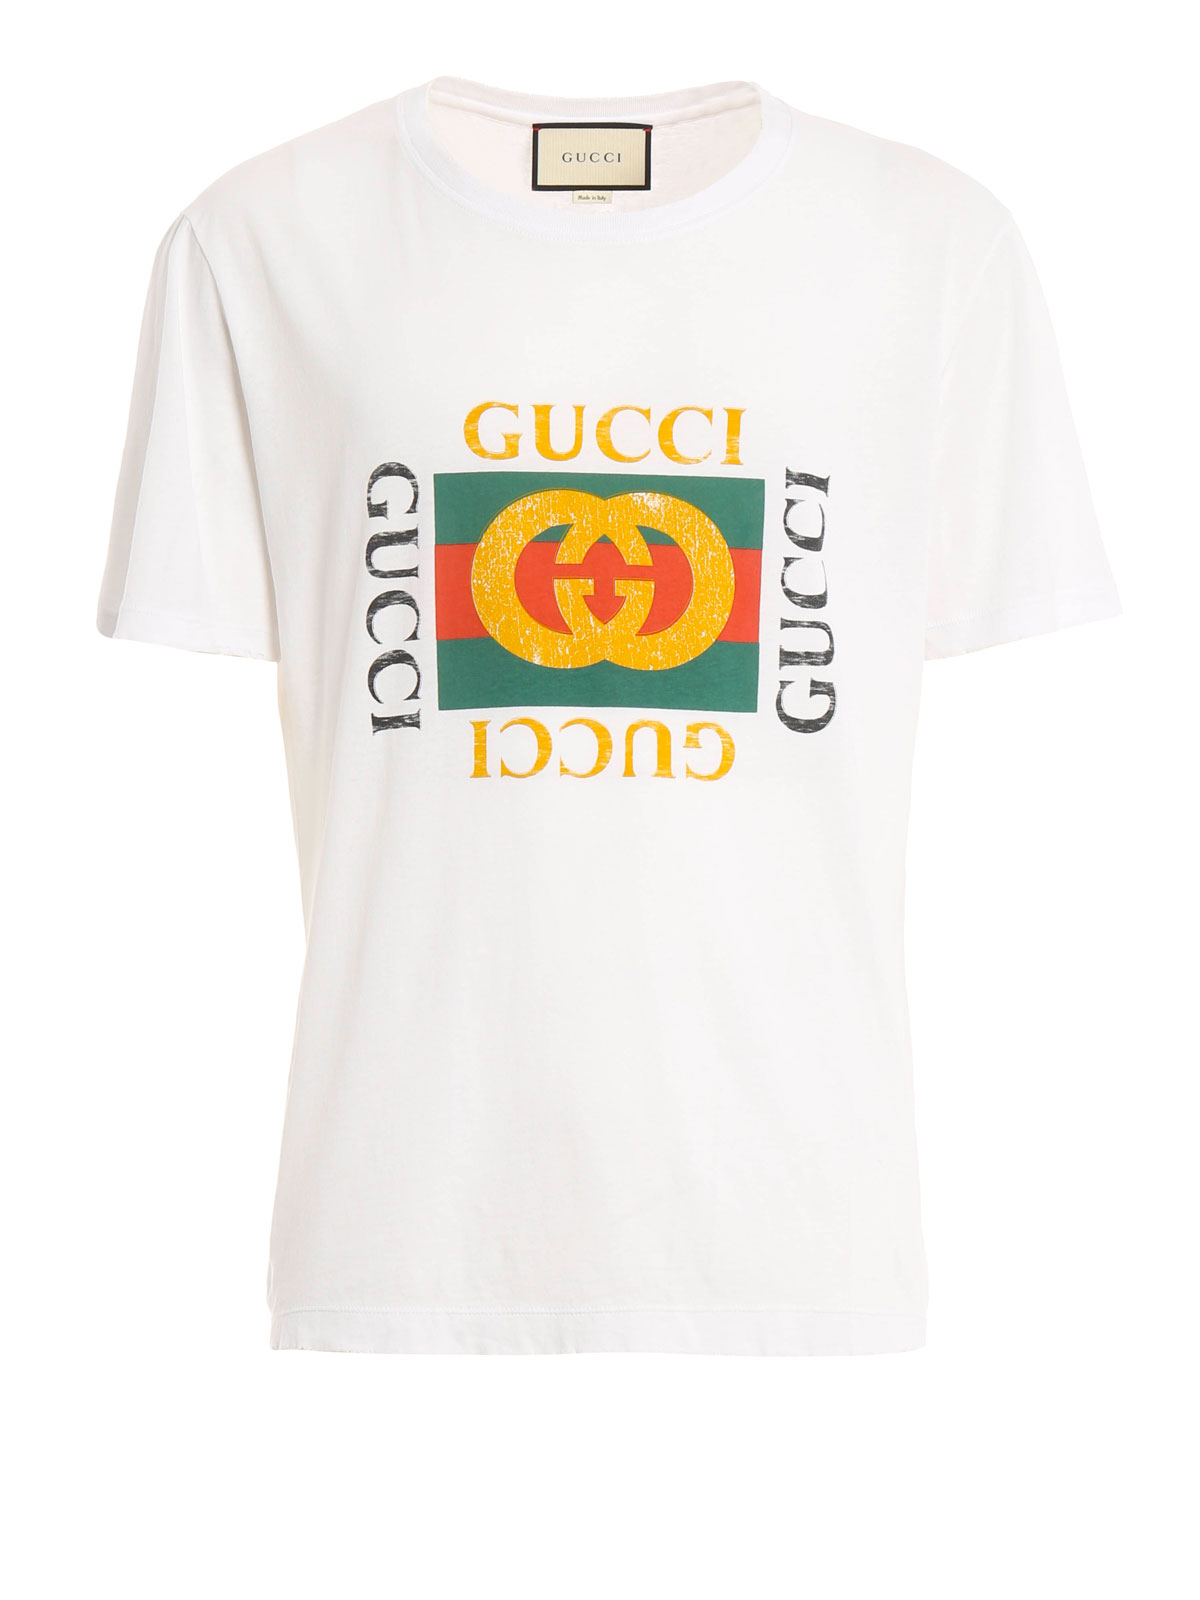 Tシャツ Gucci - Tシャツ メンズ - 白 - 440103X3F069045